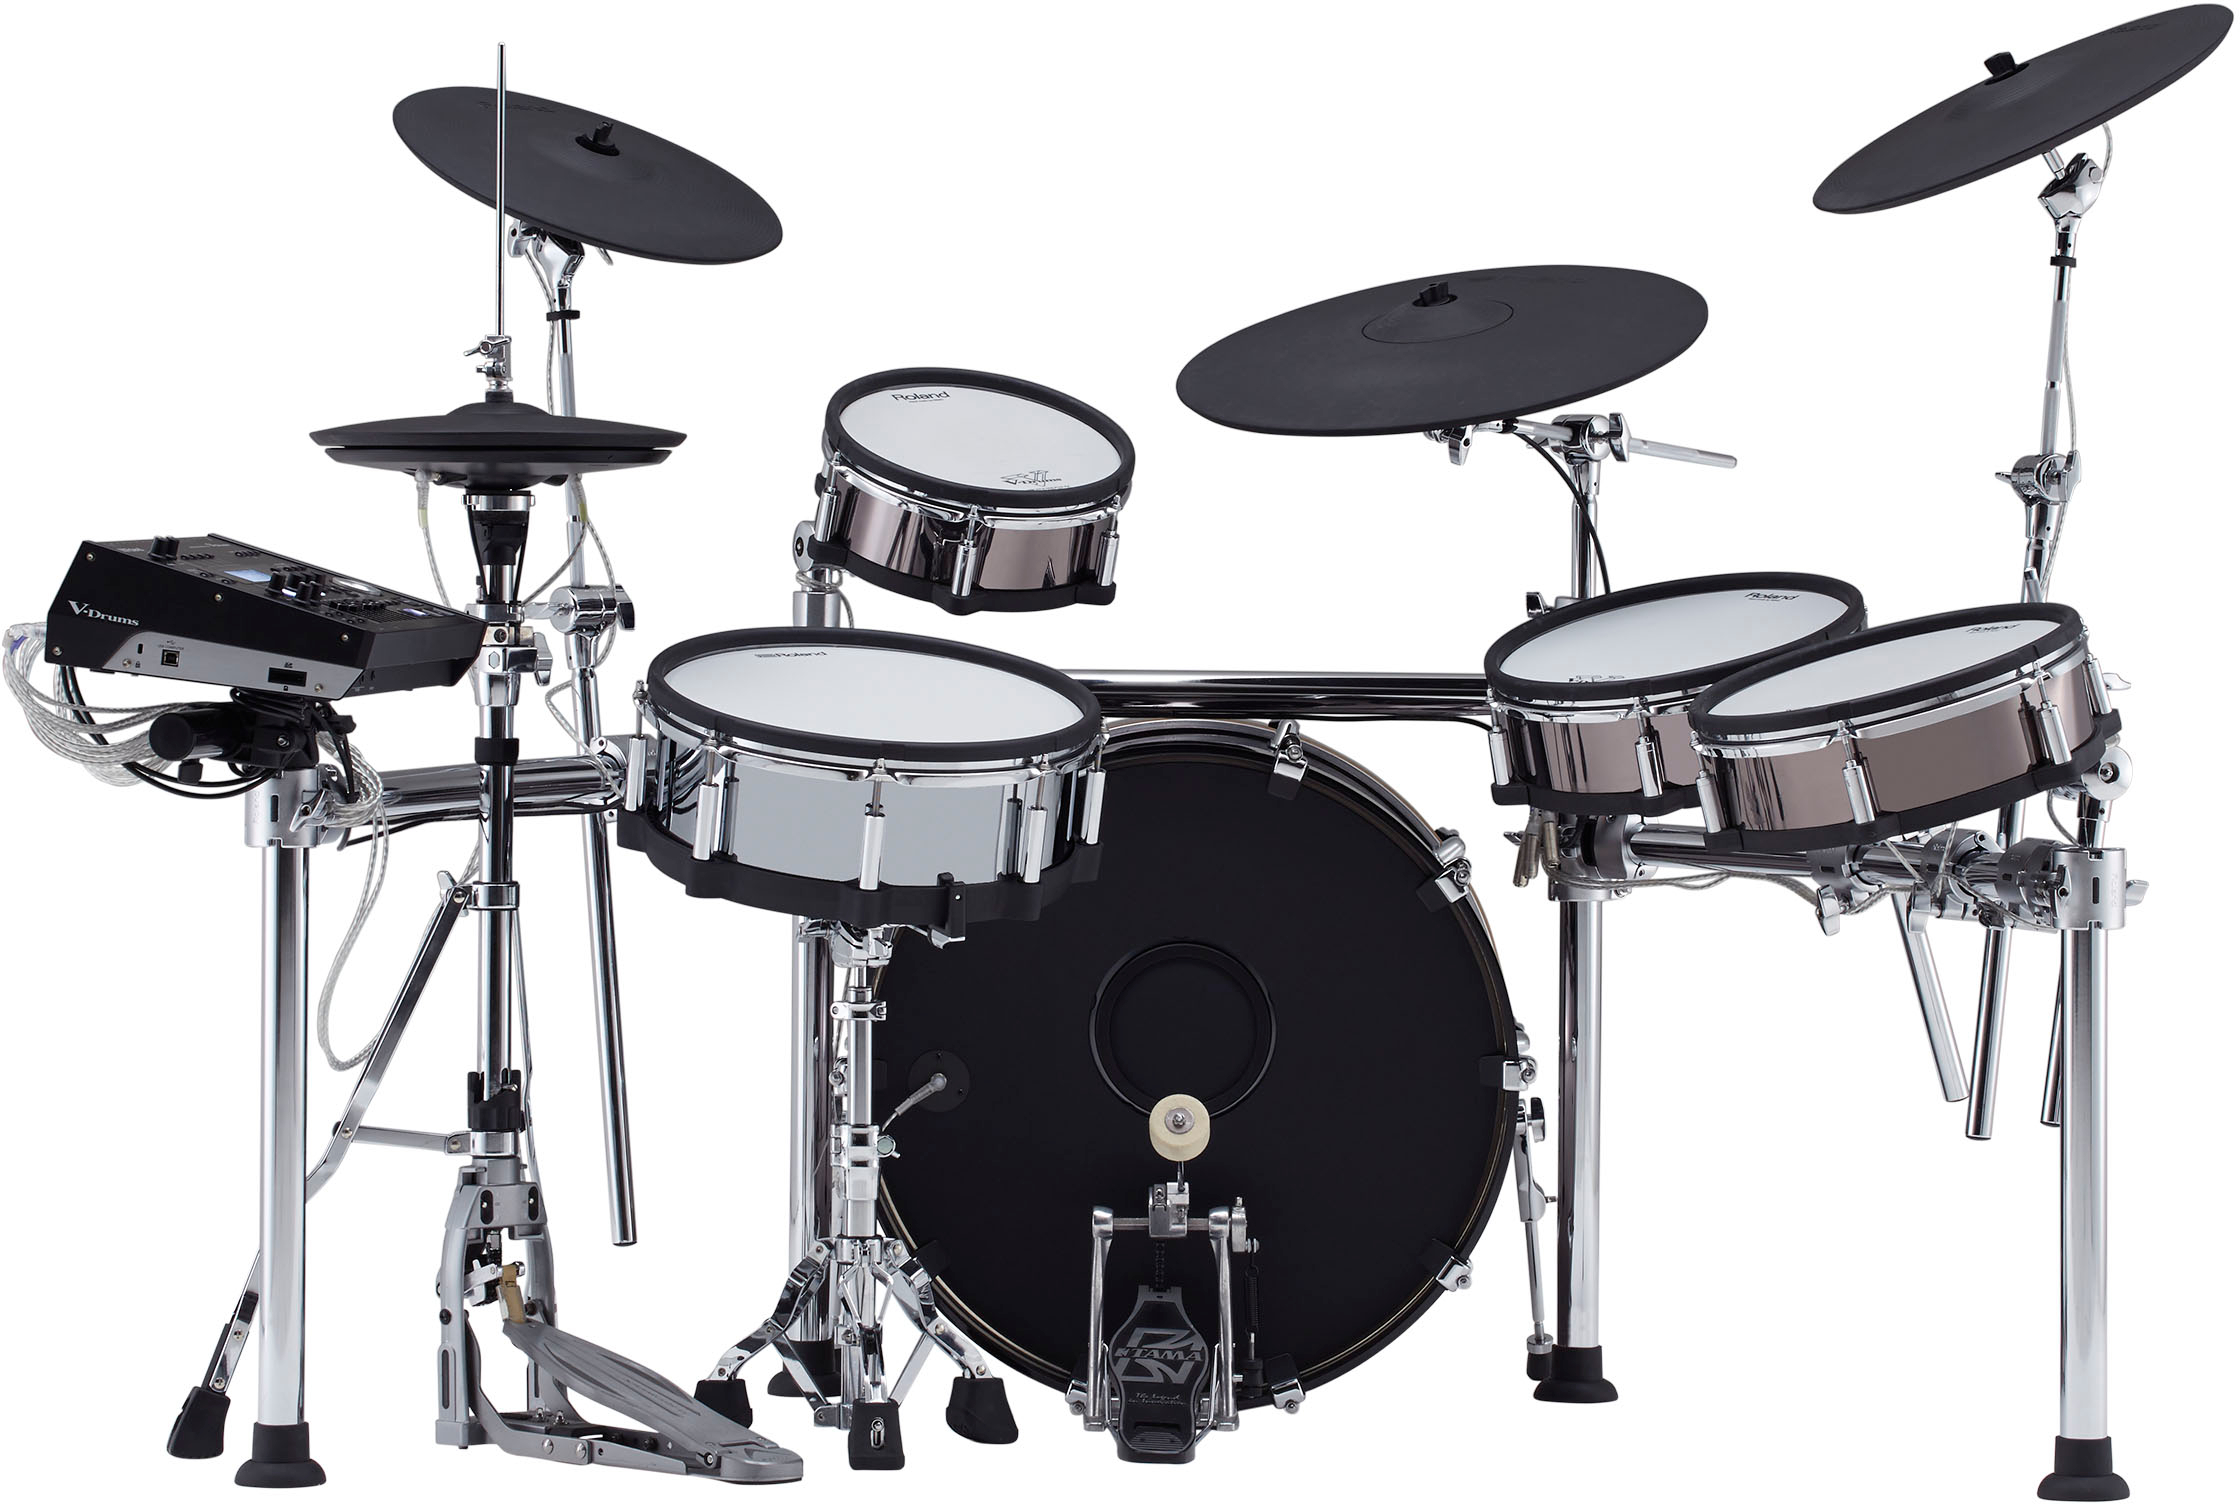 Roland Grosse Caisse V-drums Kd-220 - Electronic drum kit & set - Variation 2